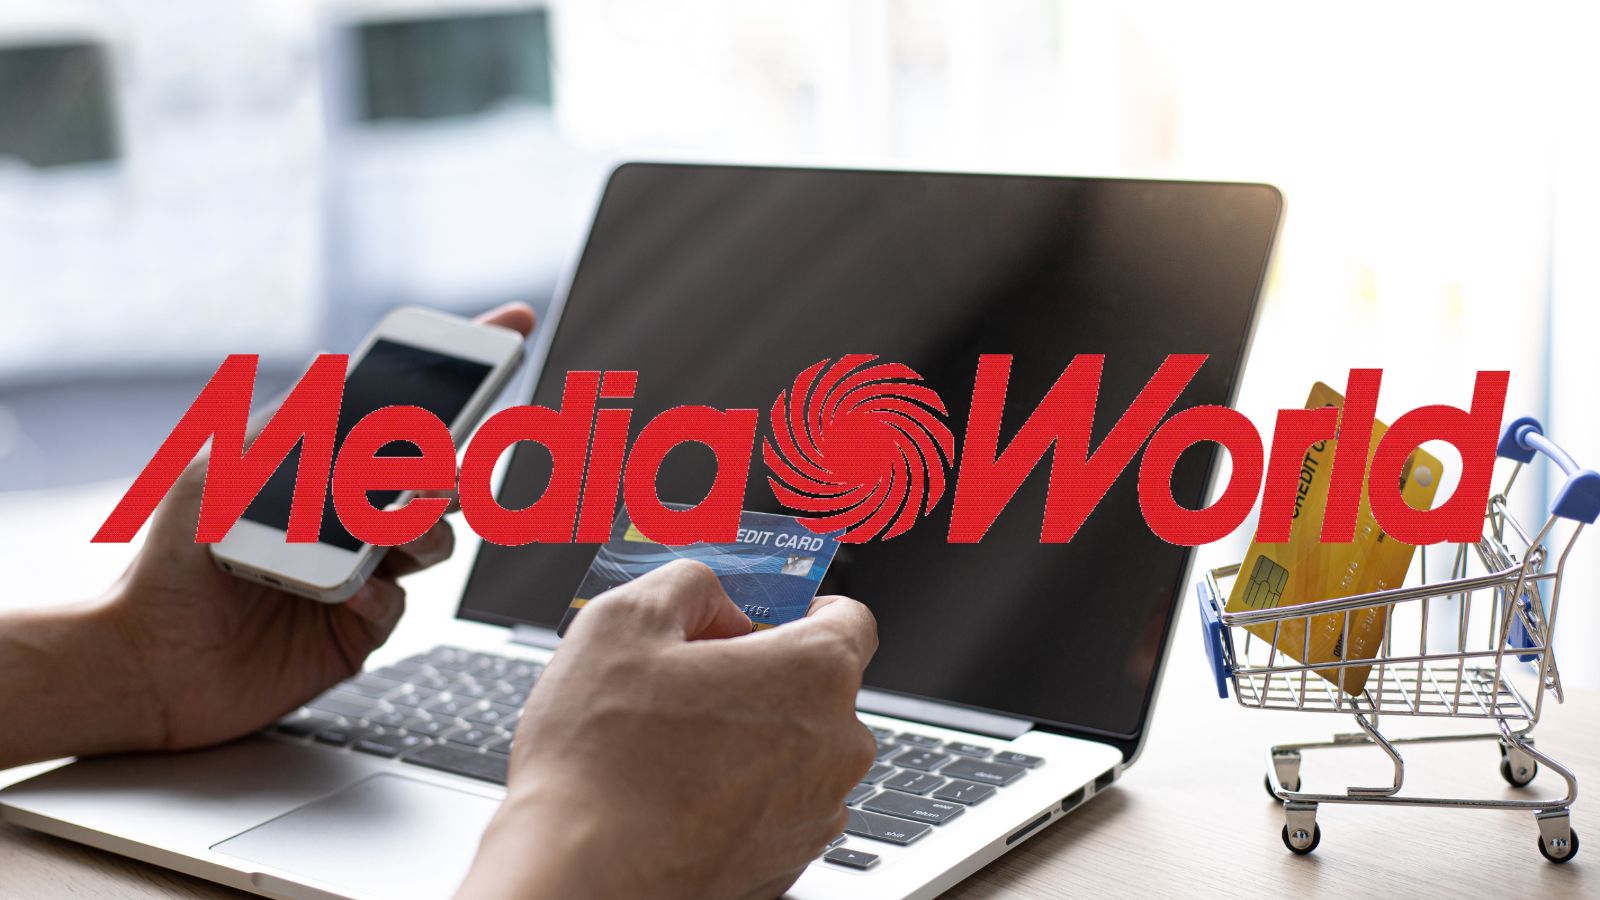 MediaWorld SORPRENDE con le offerte a prezzi GRATIS e smartphone in regalo OGGI